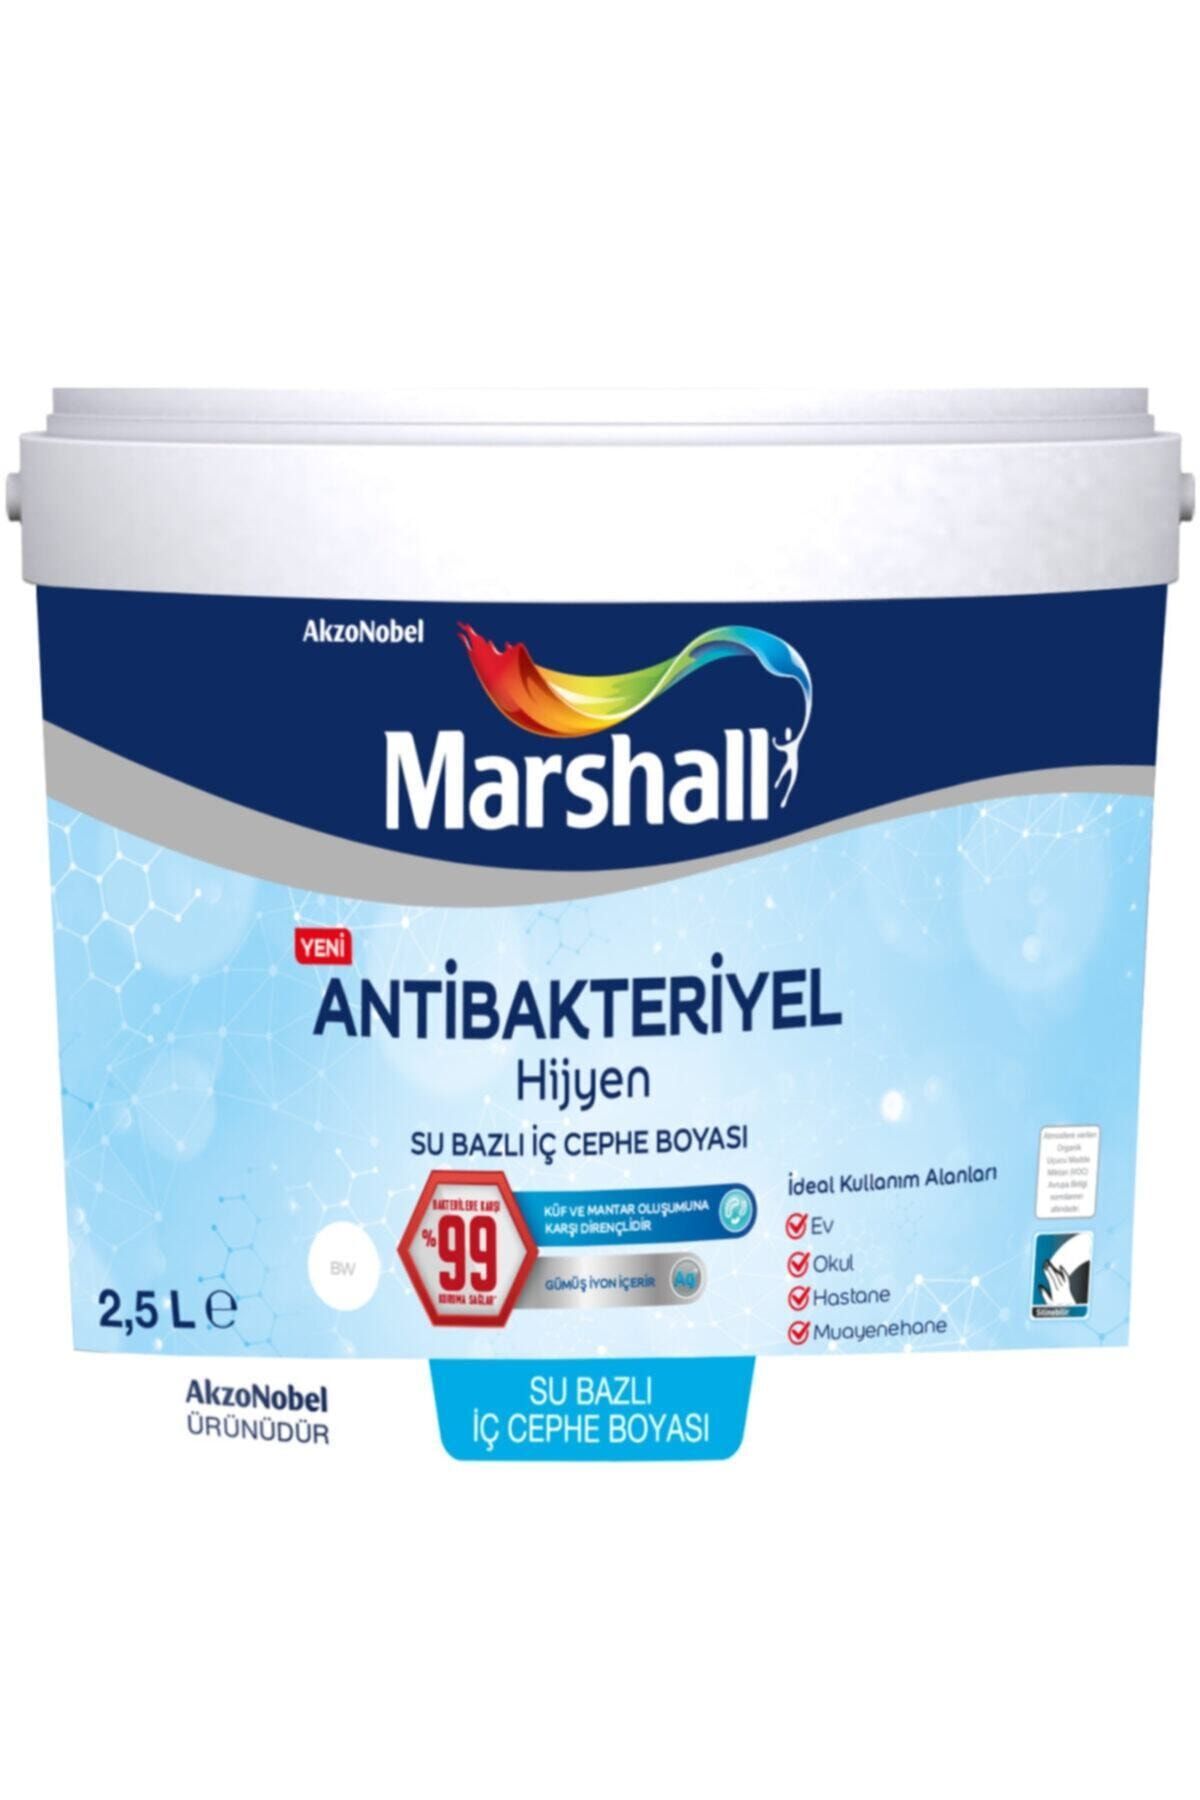 Marshall Antibakteriyel Hijyen Iç Cephe Duvar Boyası 2,5 Lt Ayçekirdeği